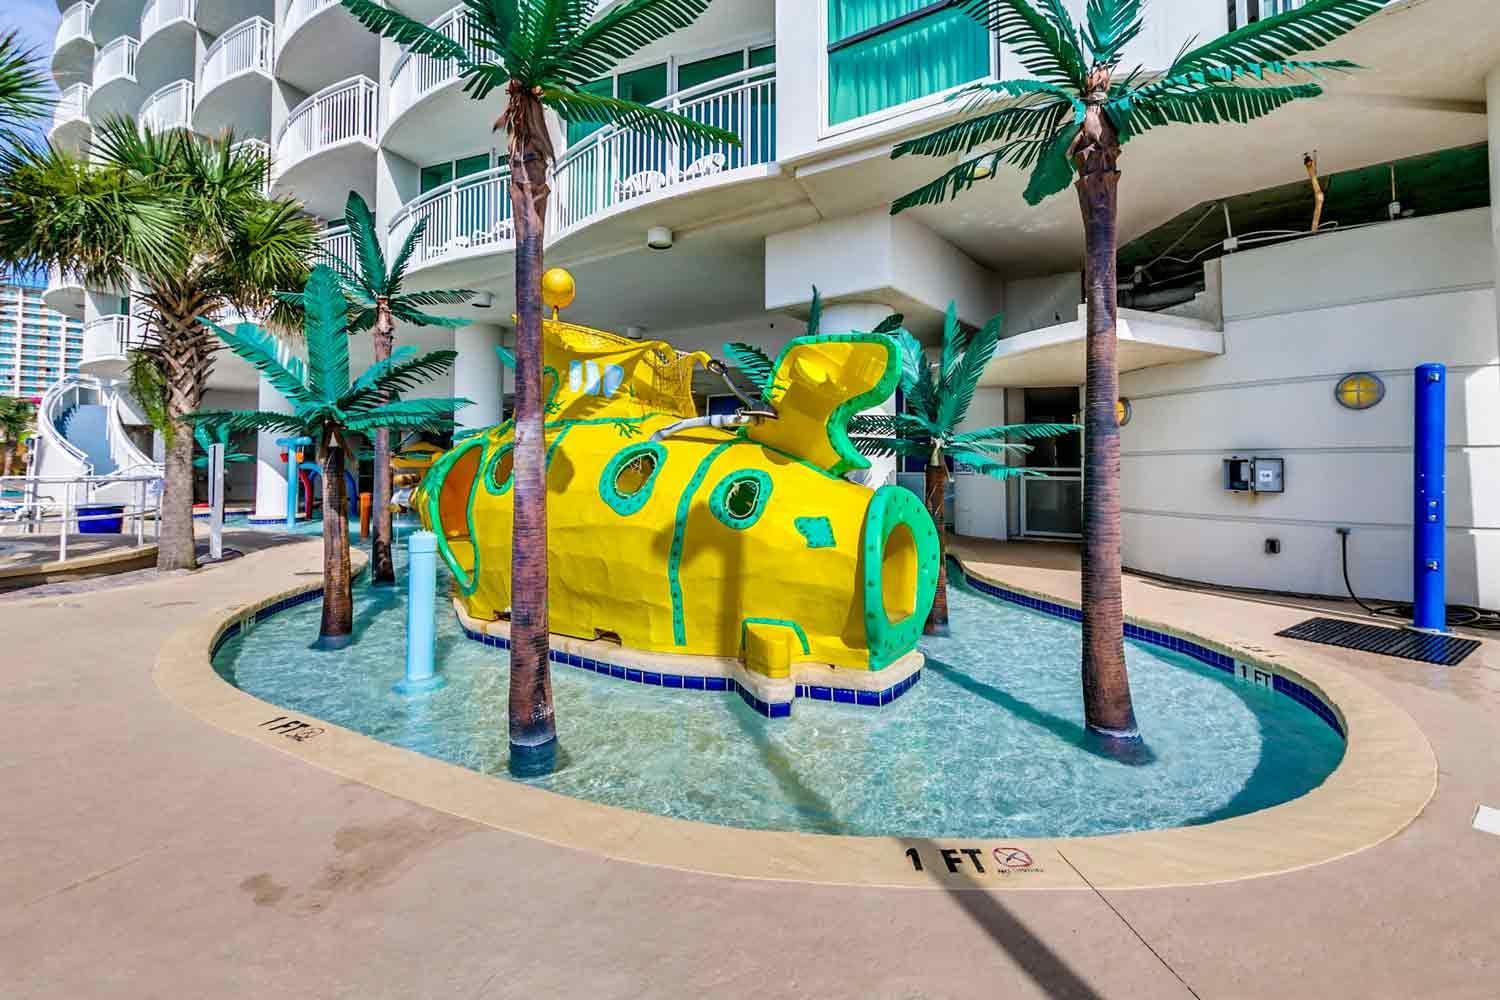 Sandy Beach Resort - 1 Bedroom Oceanfront Deluxe - Palmetto